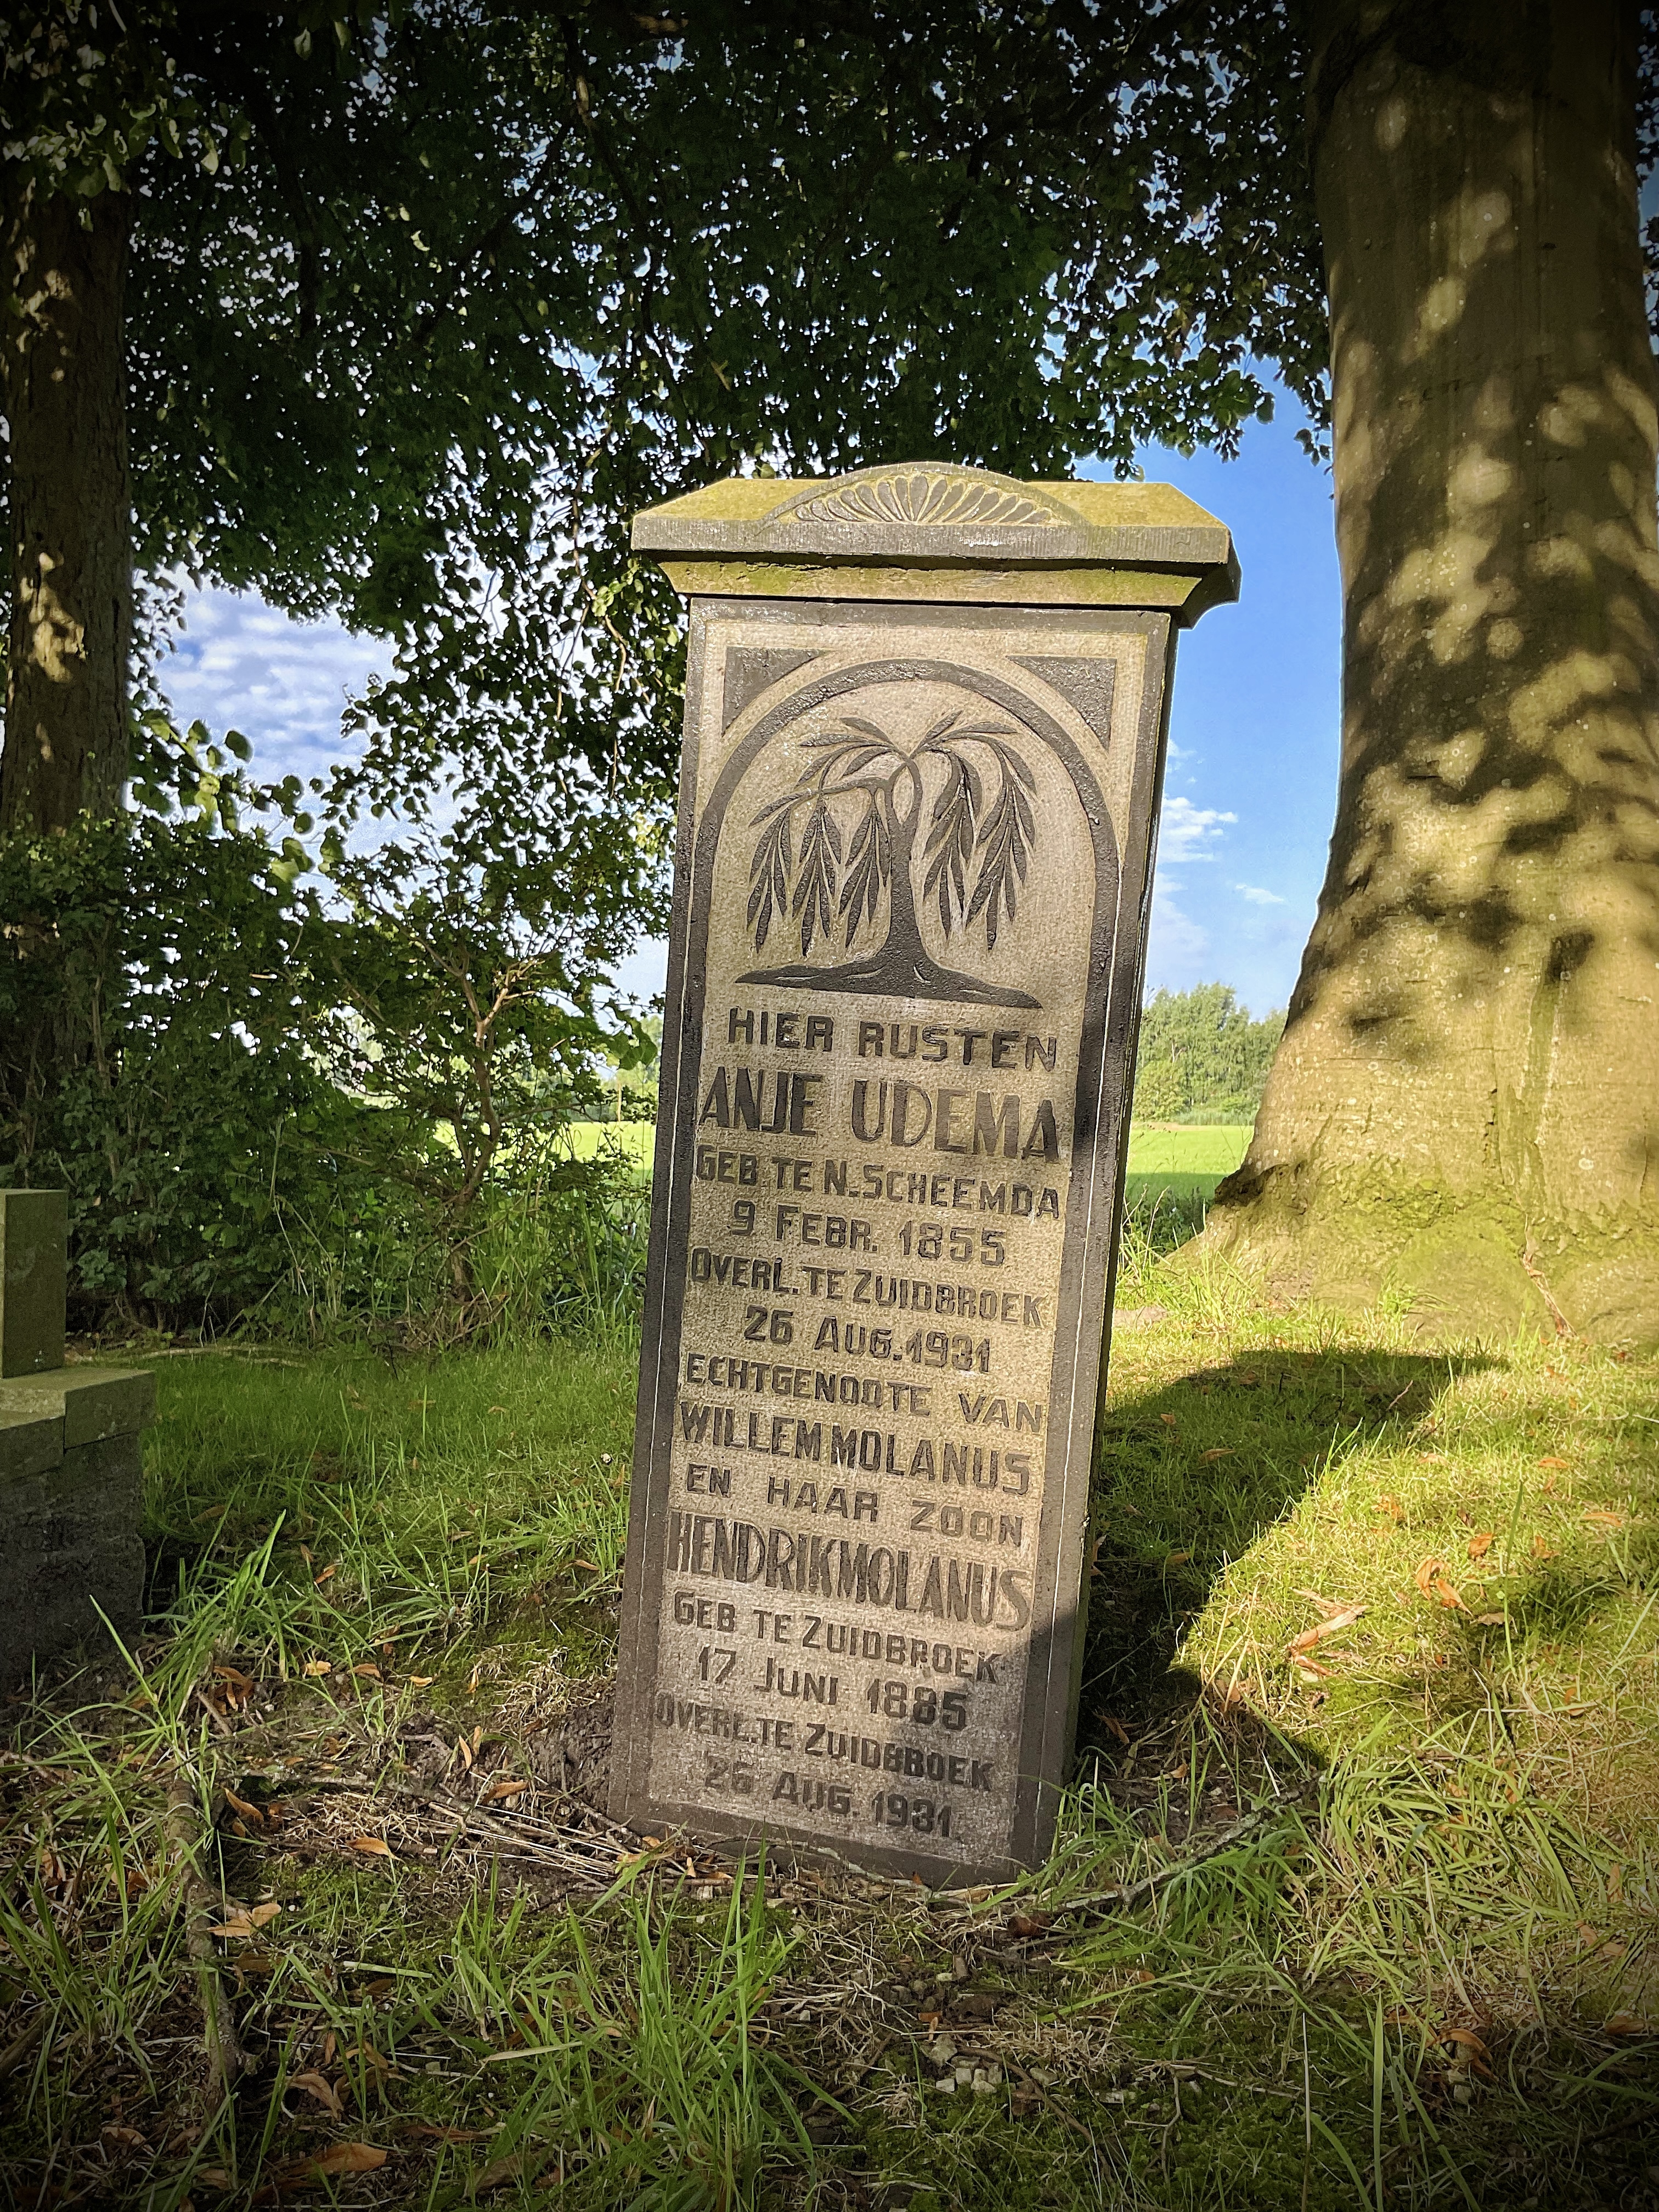 Tekst grafsteen op de begraafplaats te Zuidbroek: "Hier rusten Anje Udema, geb. tge N.Scheemda, 9 Febr/ 1855, overl. te Zuidbroek, 25 Aug. 1931, echtgenoote van Willem Molanus en haar zoon Hendrik Molanus, geb. te Zuidbroek, 17 Juni 1885, overl. te Zuidbroek, 26 Aug. 1931".